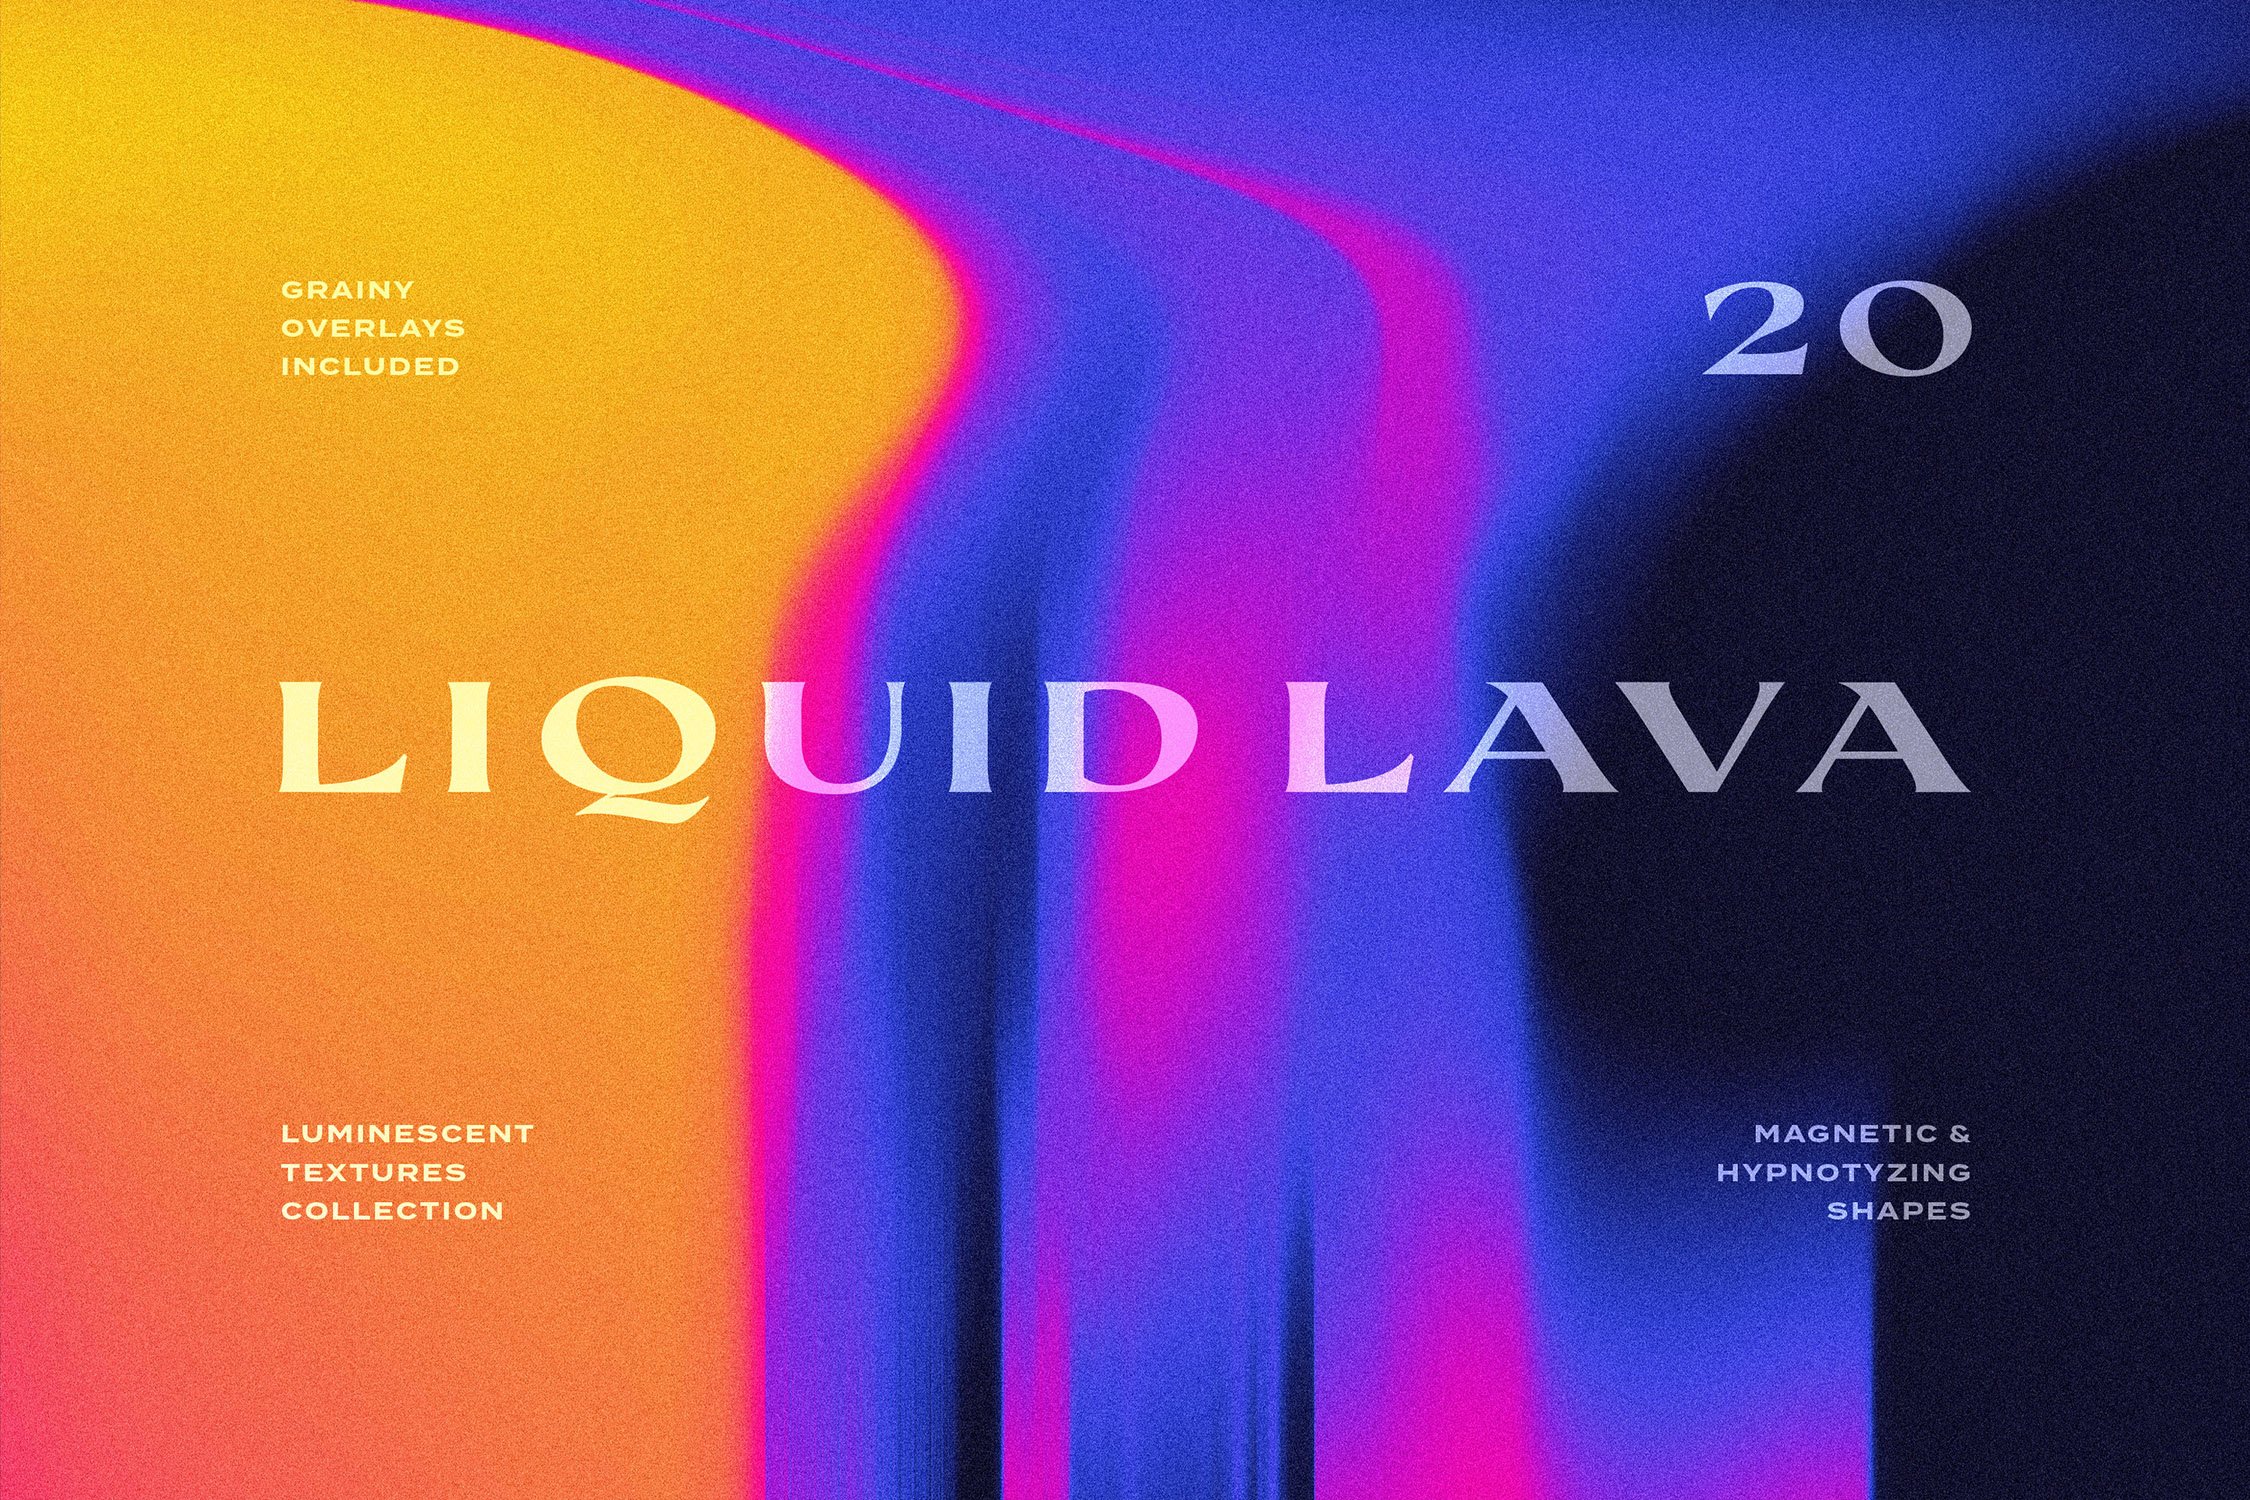 Liquid Lava Luminescent Textures cover image.